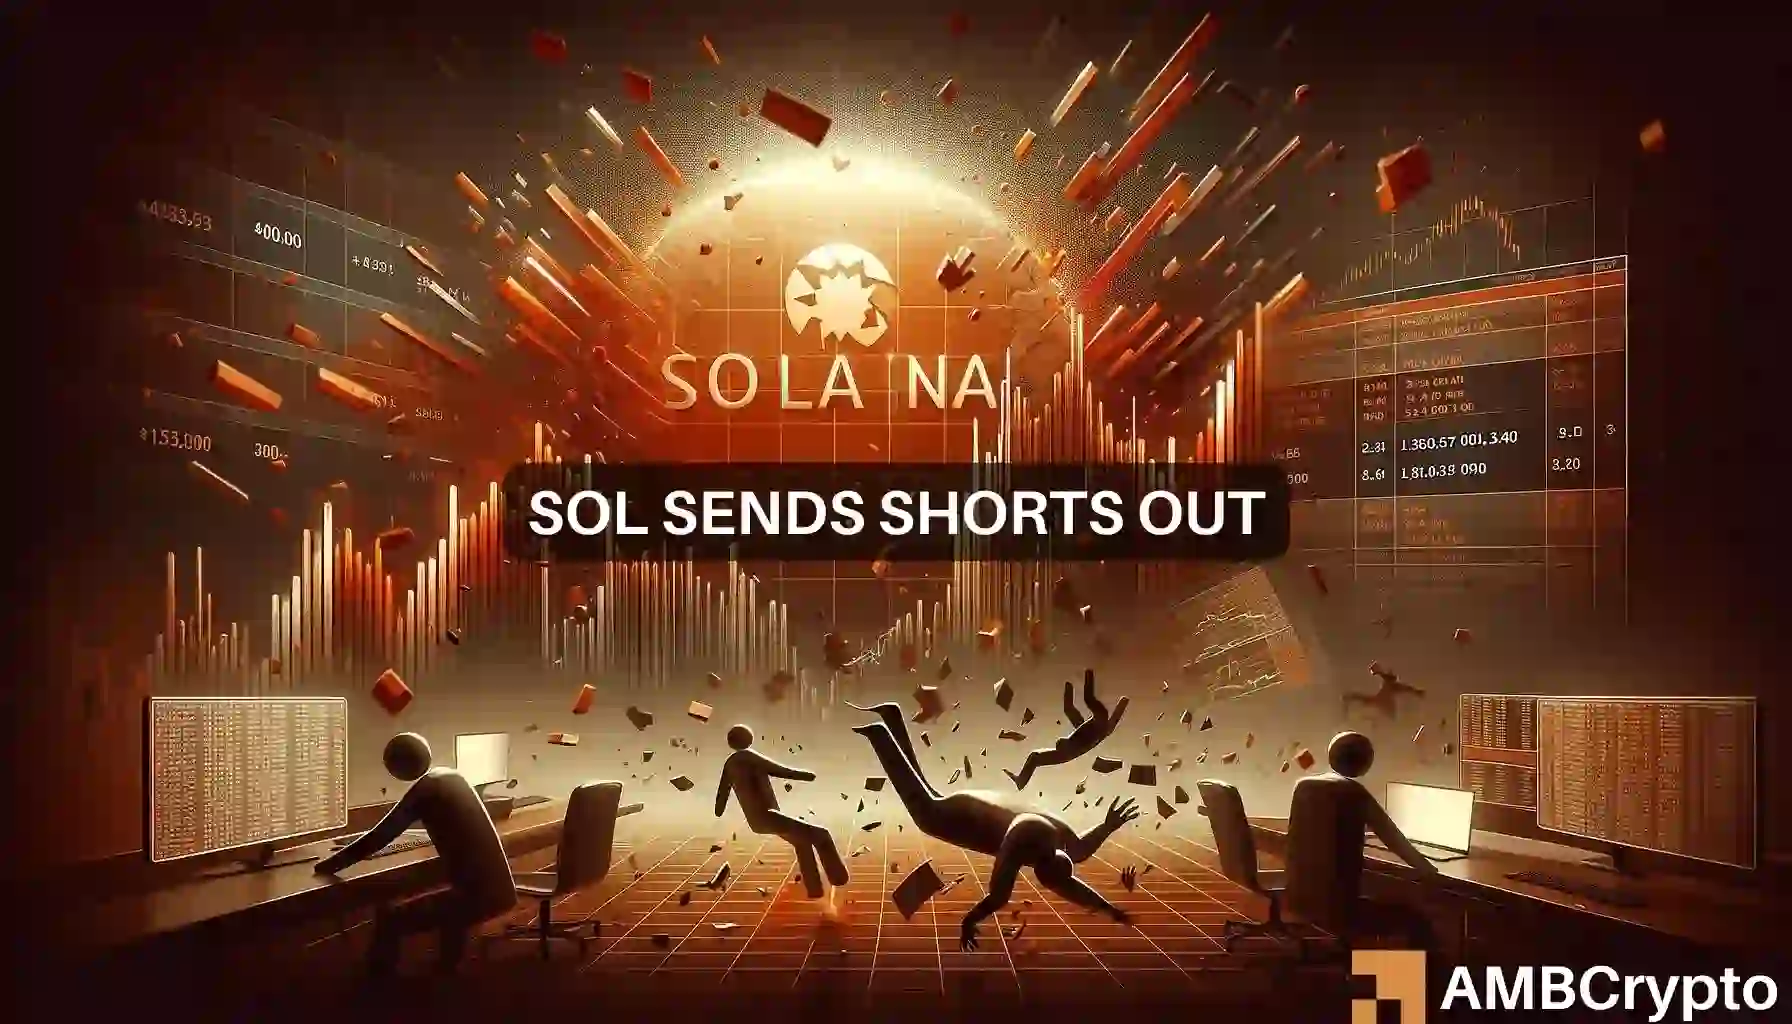 Solana news